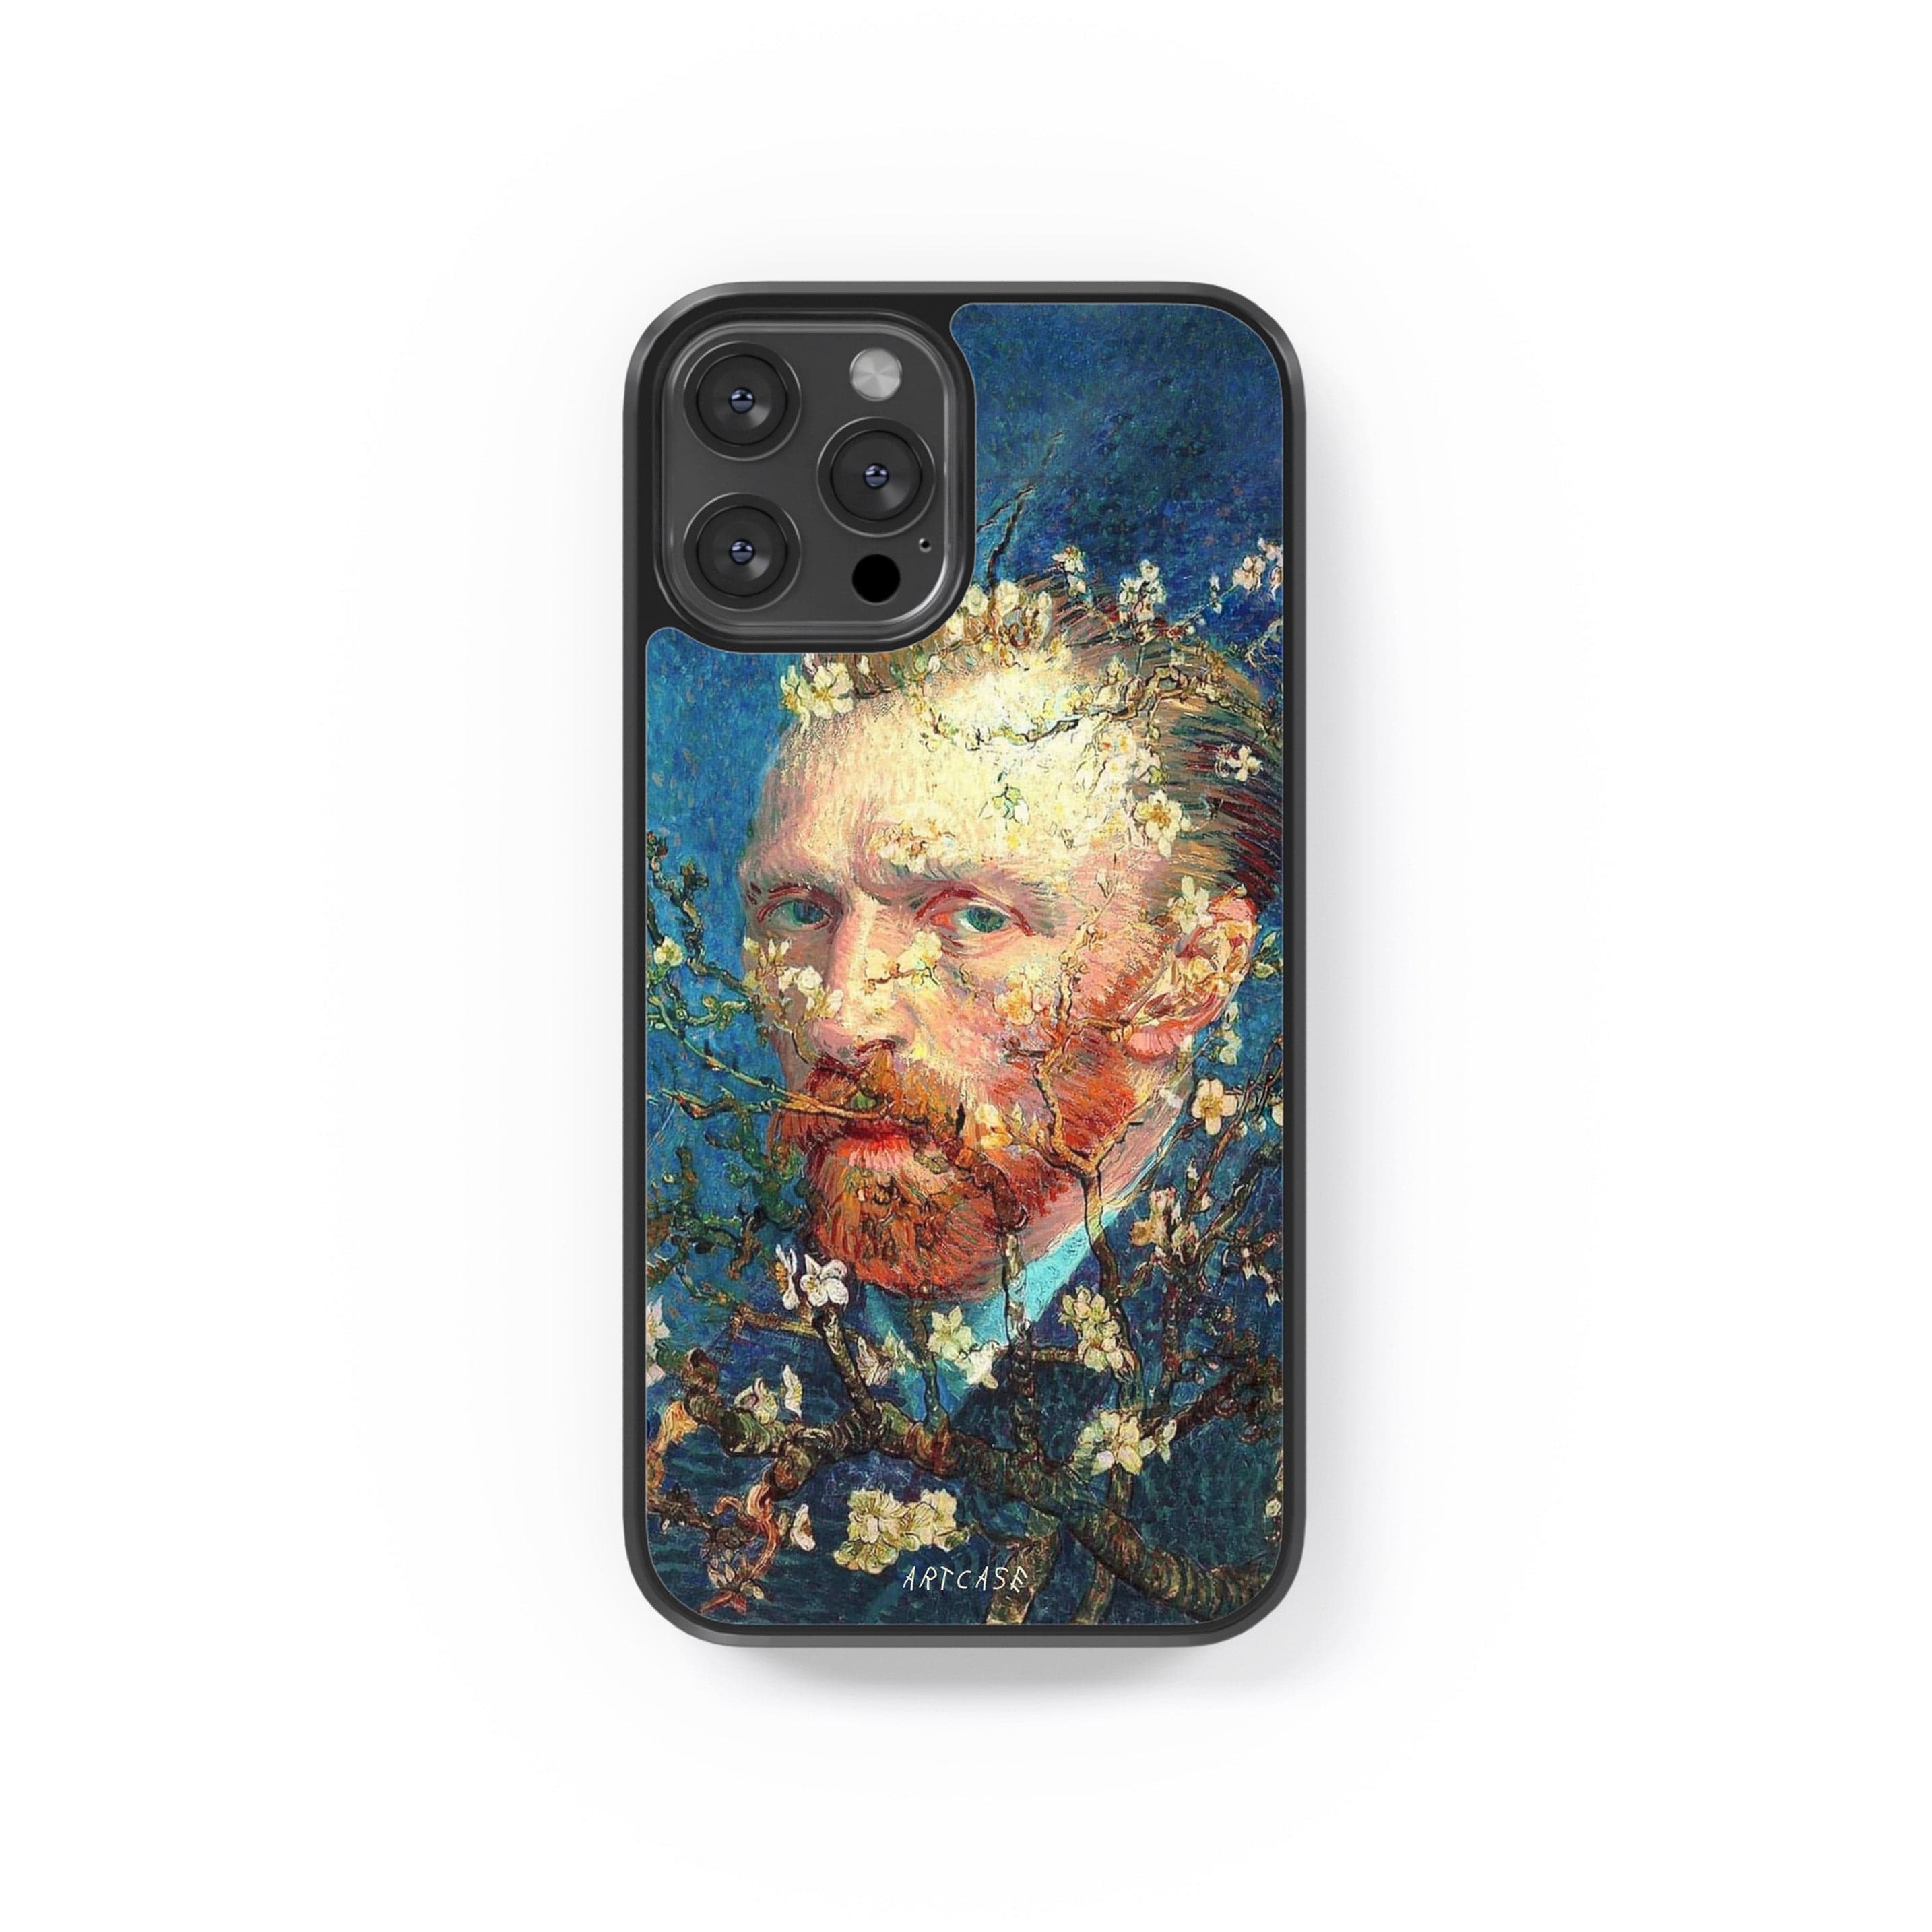 Phone case "Van Gogh in flowers"